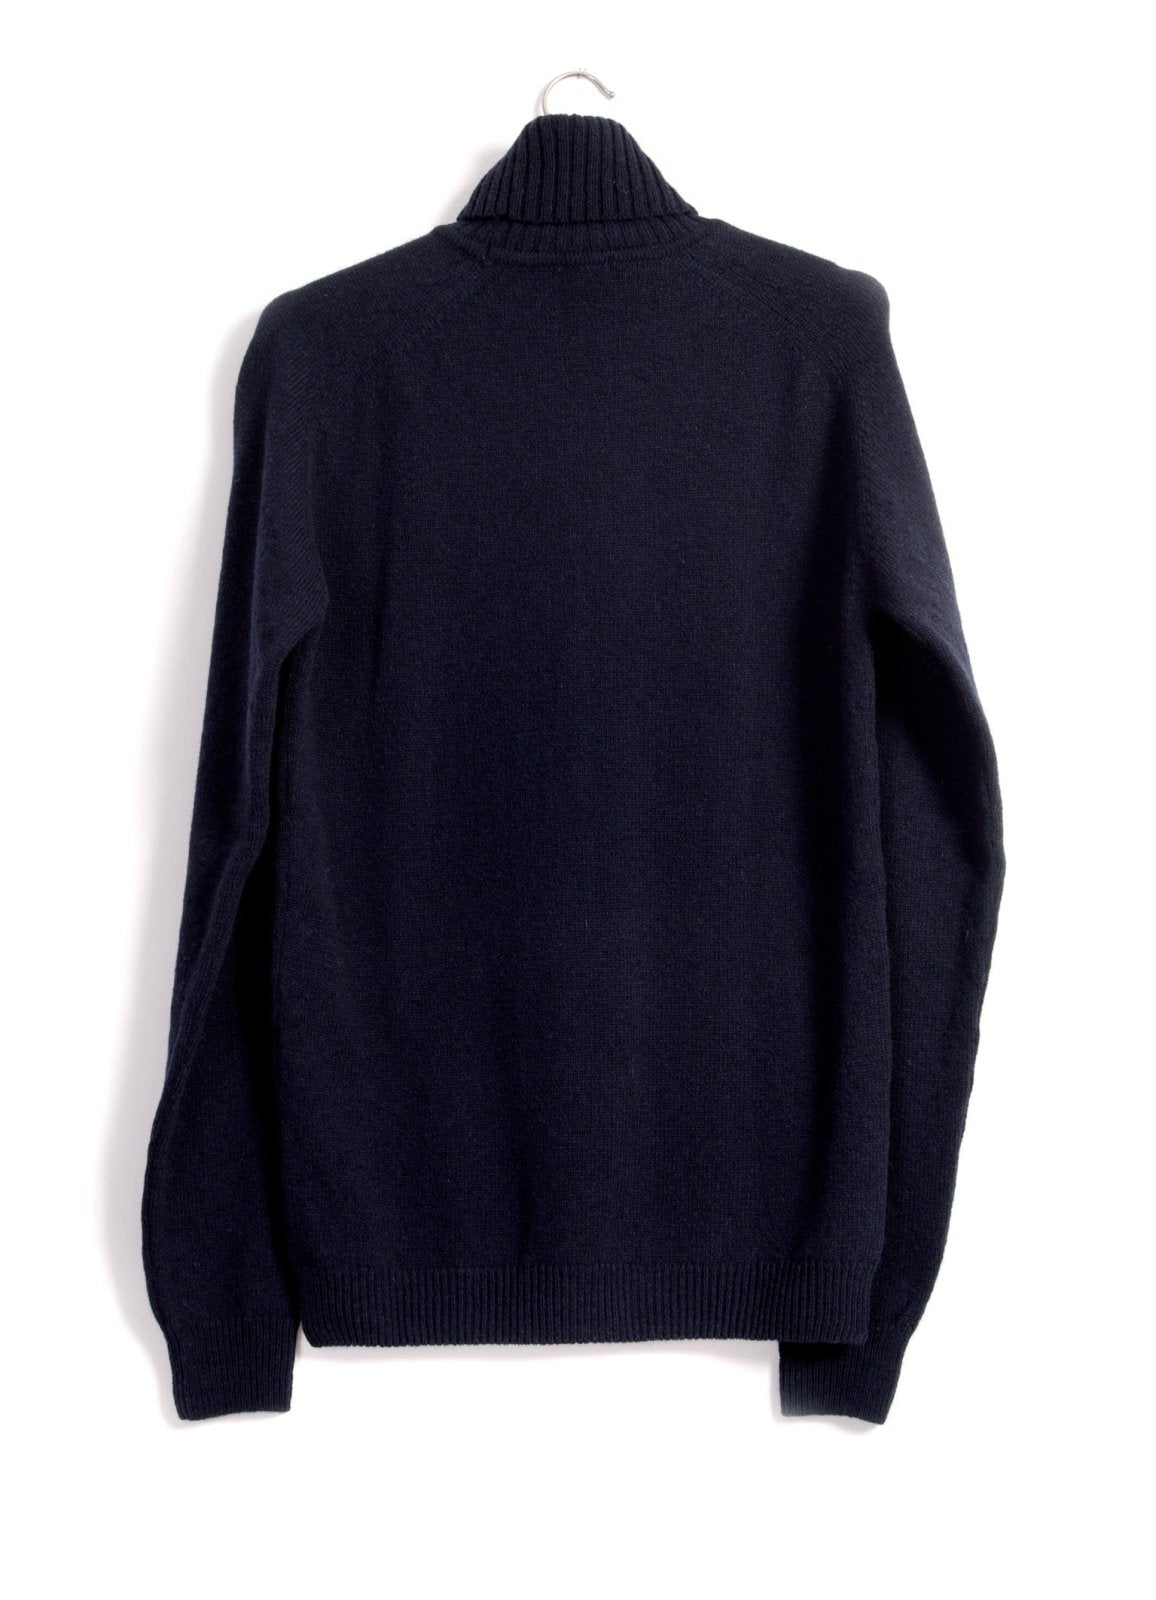 HANSEN Garments - ALVIN | Single Stitch Turtleneck Sweater | Navy - HANSEN Garments